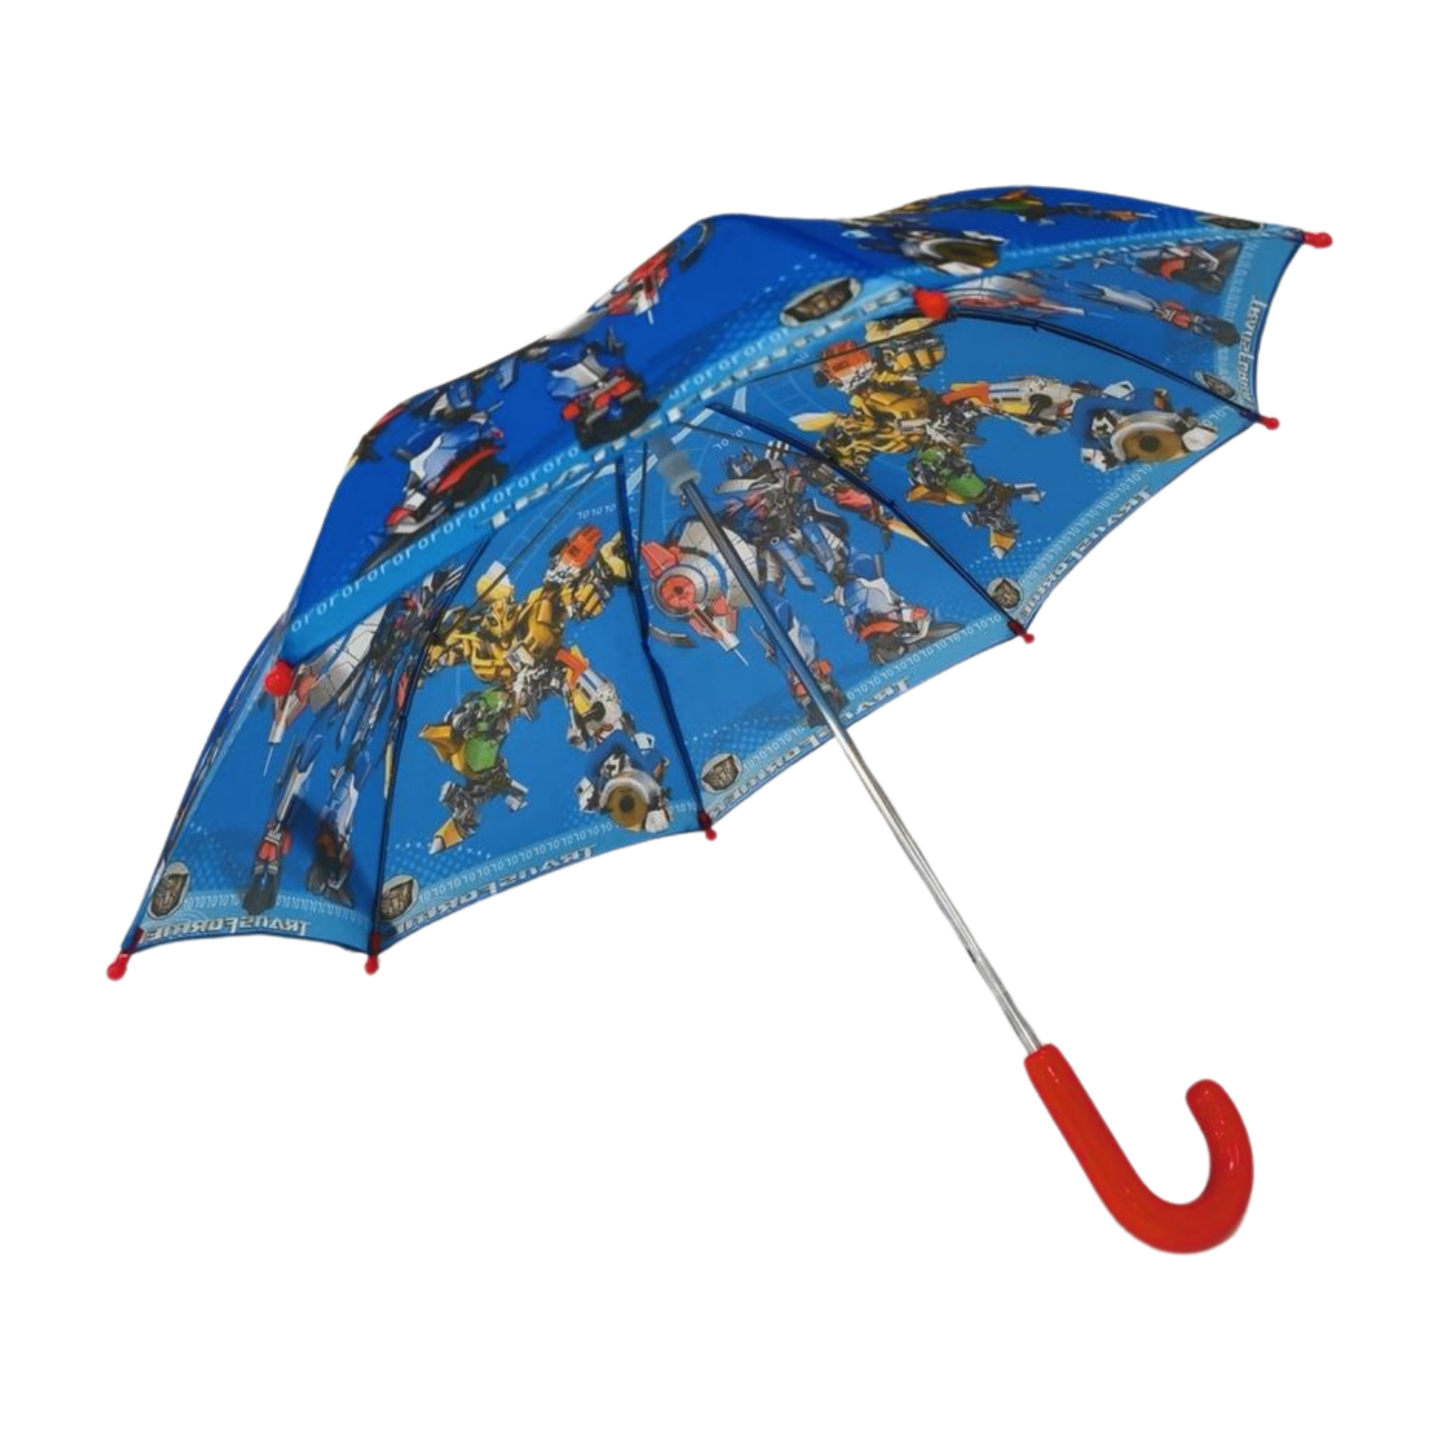 https://www.hodaumbrella.com/mini-children-umbrella-product/